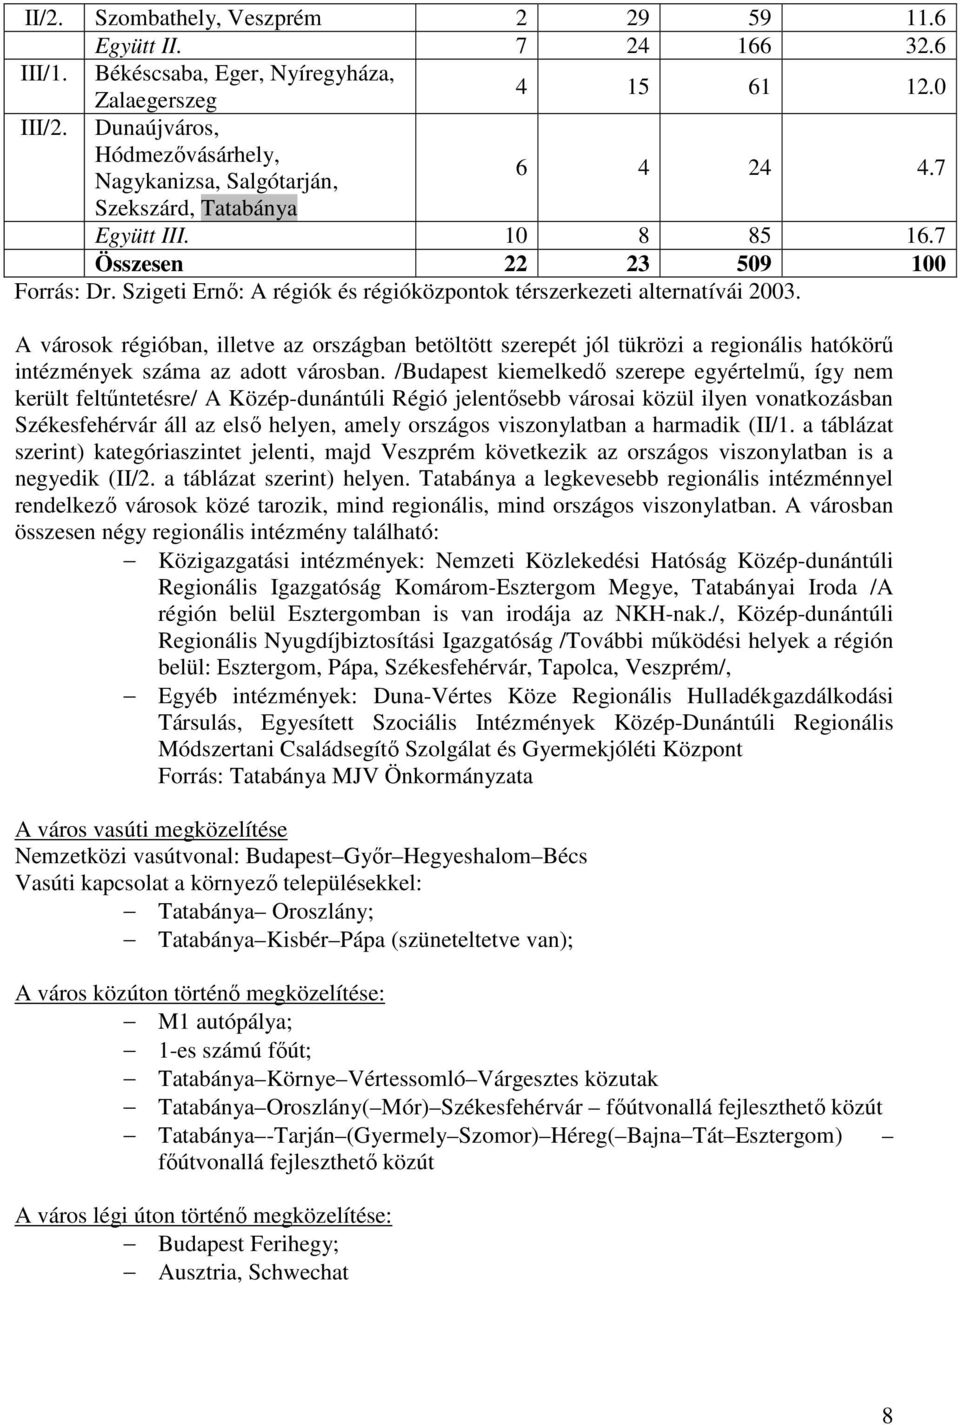 Szigeti Ernő: A régiók és régióközpontok térszerkezeti alternatívái 2003.